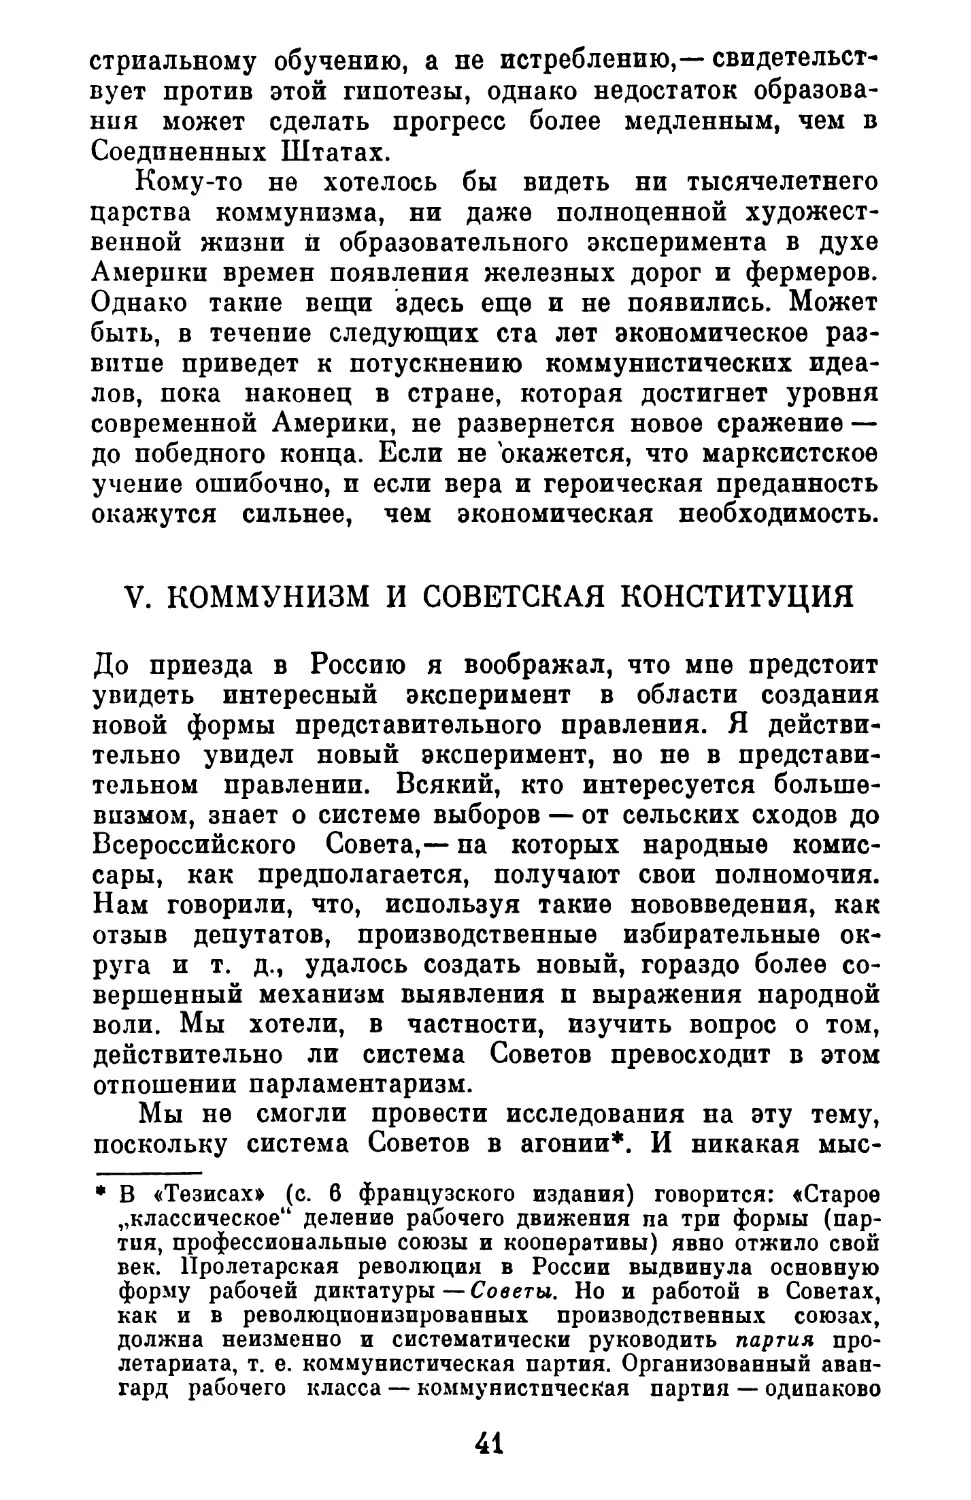 V. Коммунизм и советская конституция